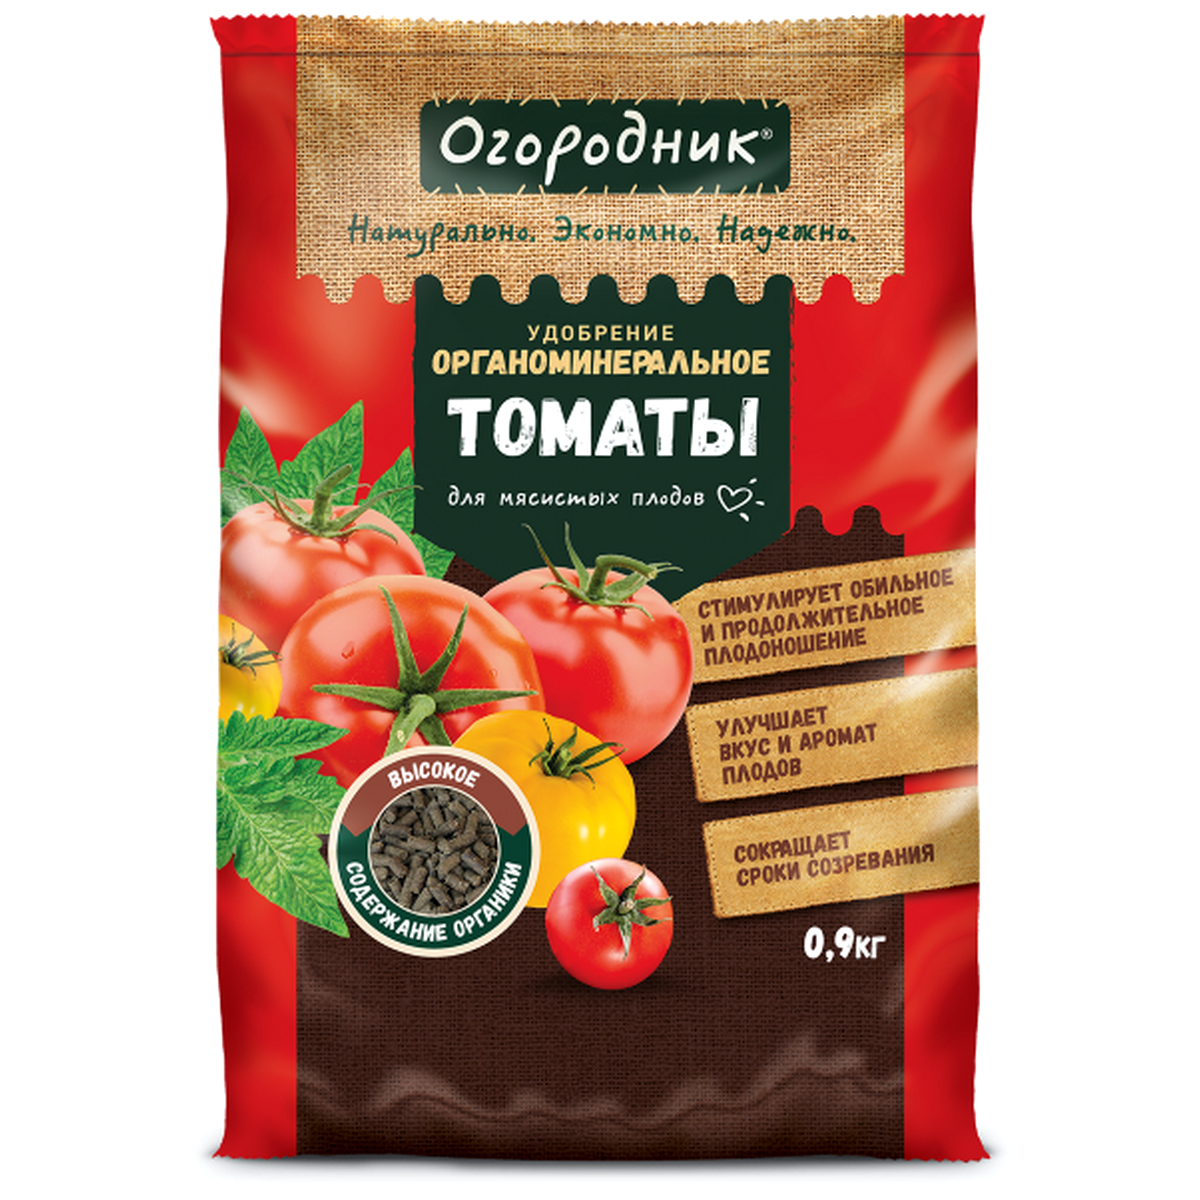 91031954 Удобрение сухое органоминеральное для томатов гранулированное 0.9 кг STLM-0449858 ОГОРОДНИК